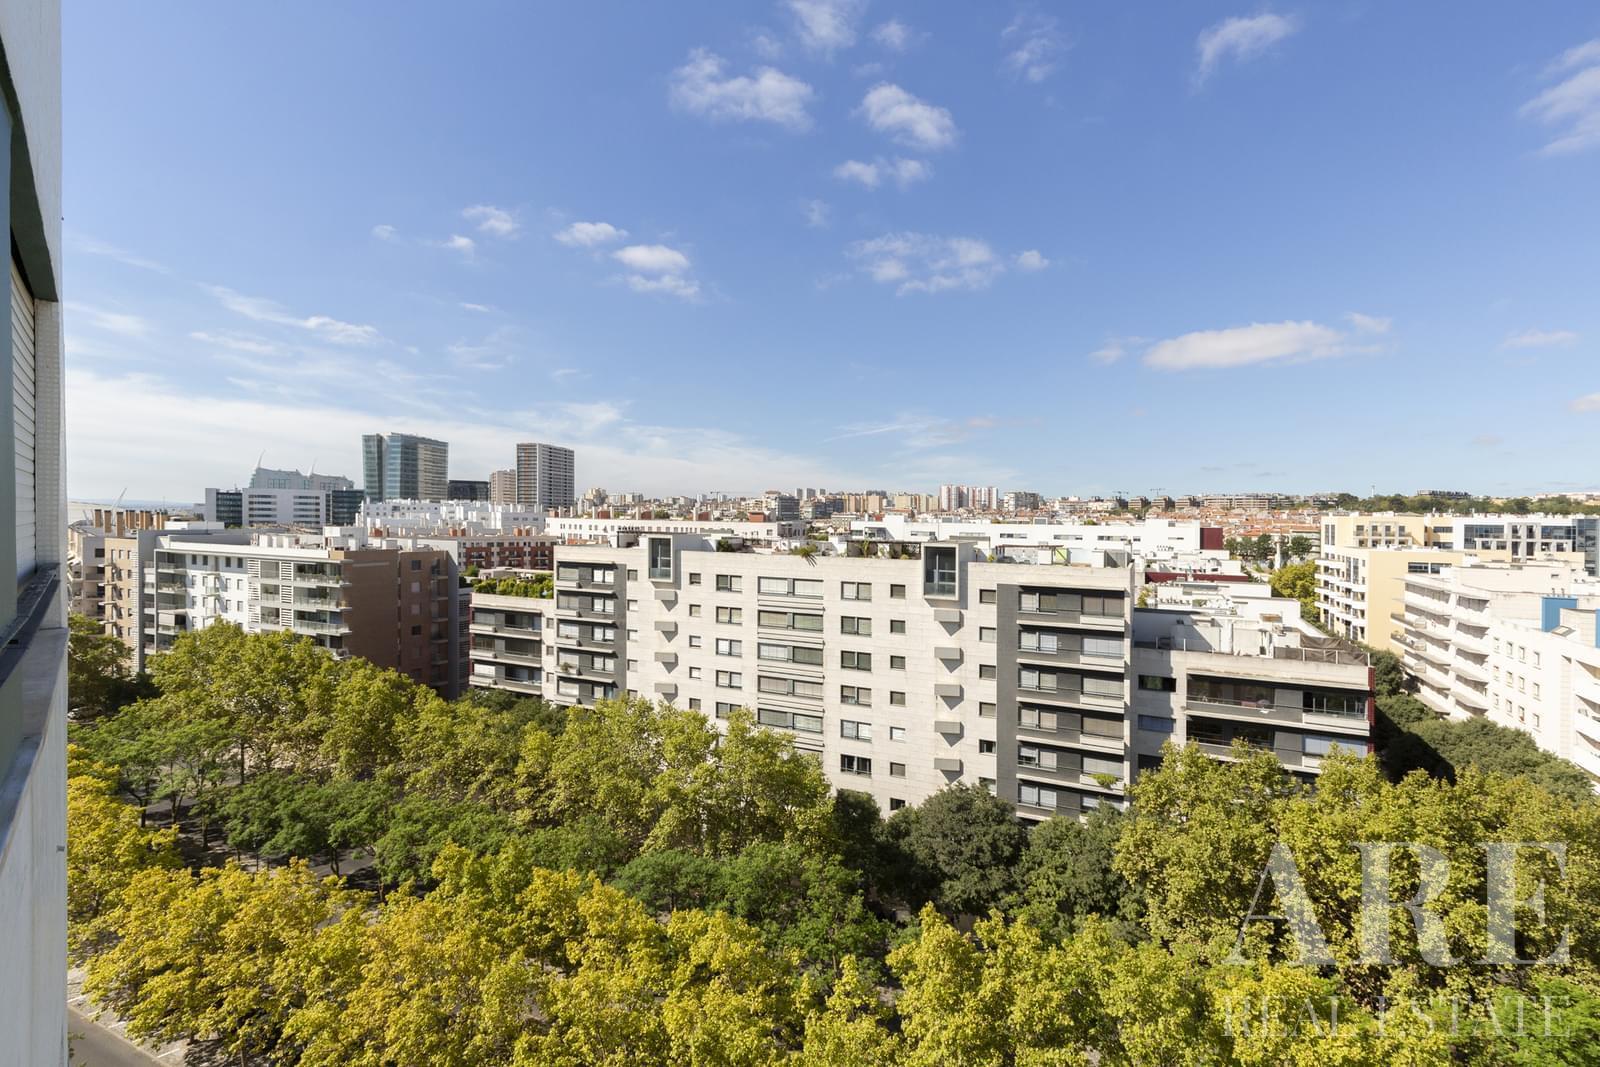 Apartment for sale in Parque das Nações, Lisbon